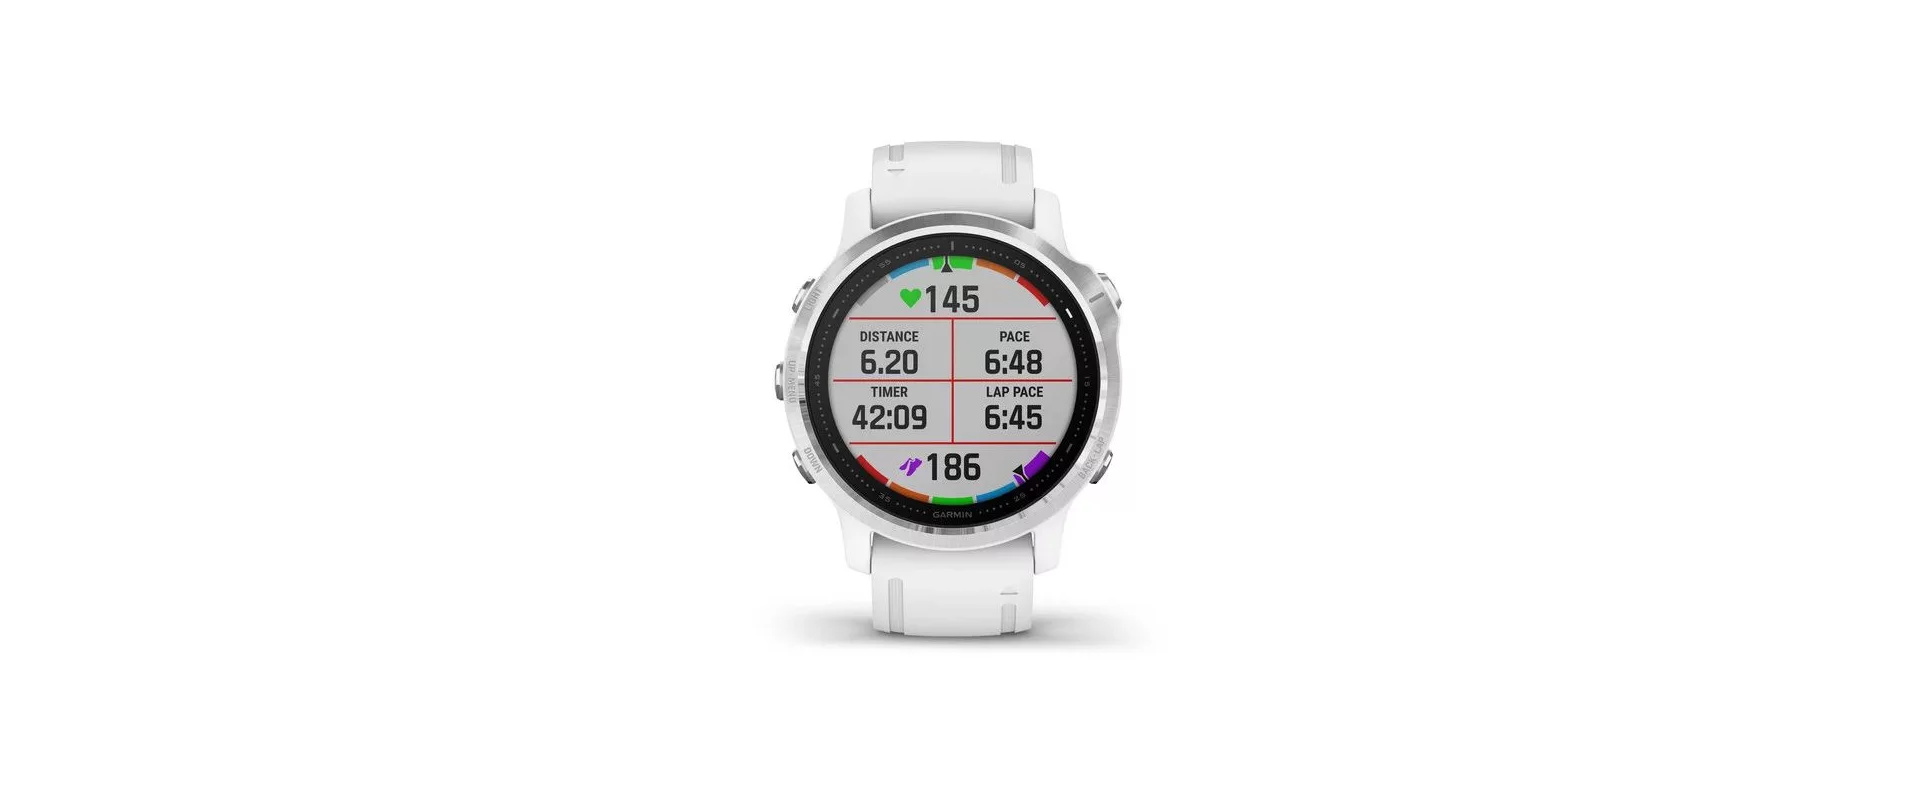 Garmin Fenix 6S / Смарт-часы беговые с GPS, HR и Garmin Pay фото 1